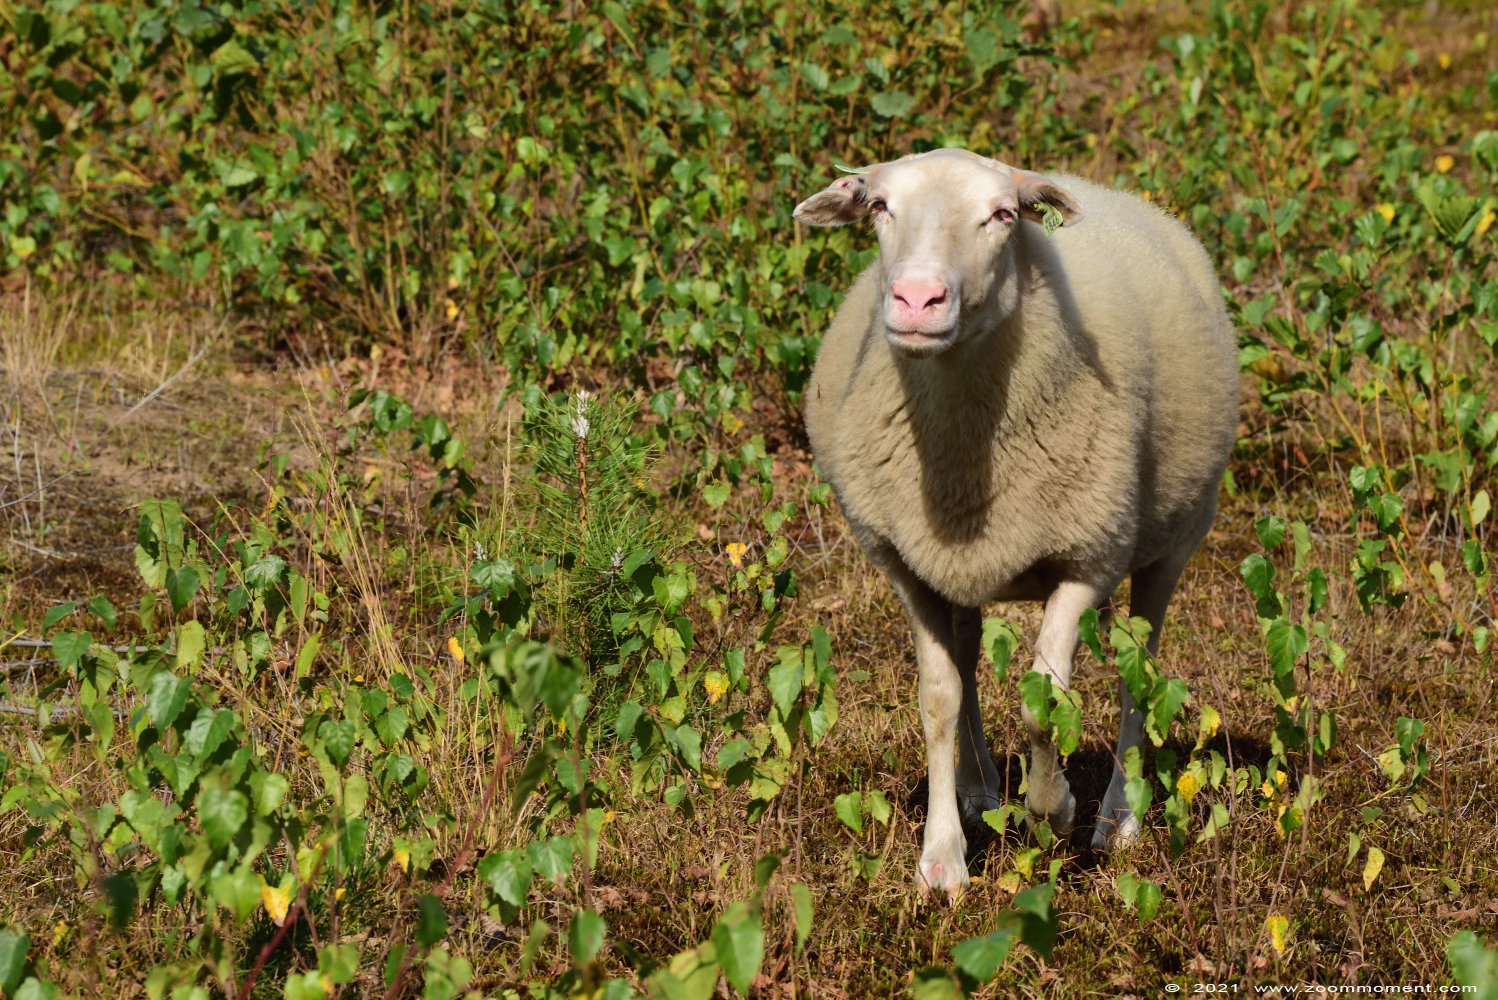 schaap sheep
Trefwoorden: Eksterheide schaap sheep